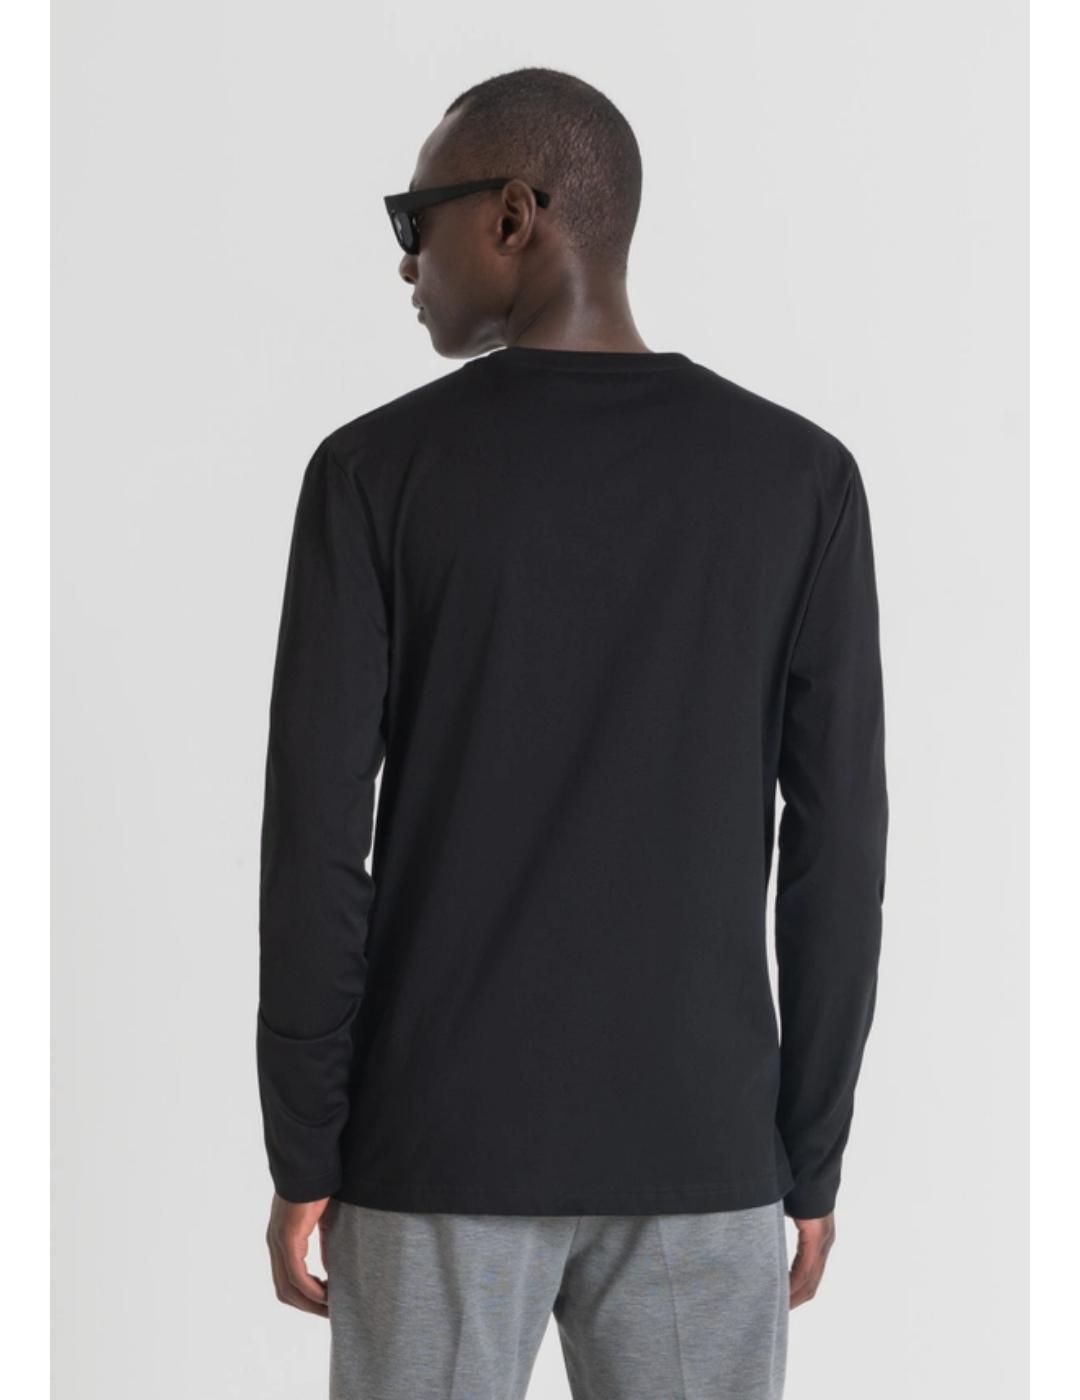 Camiseta Antony Morato larga negra para hombre